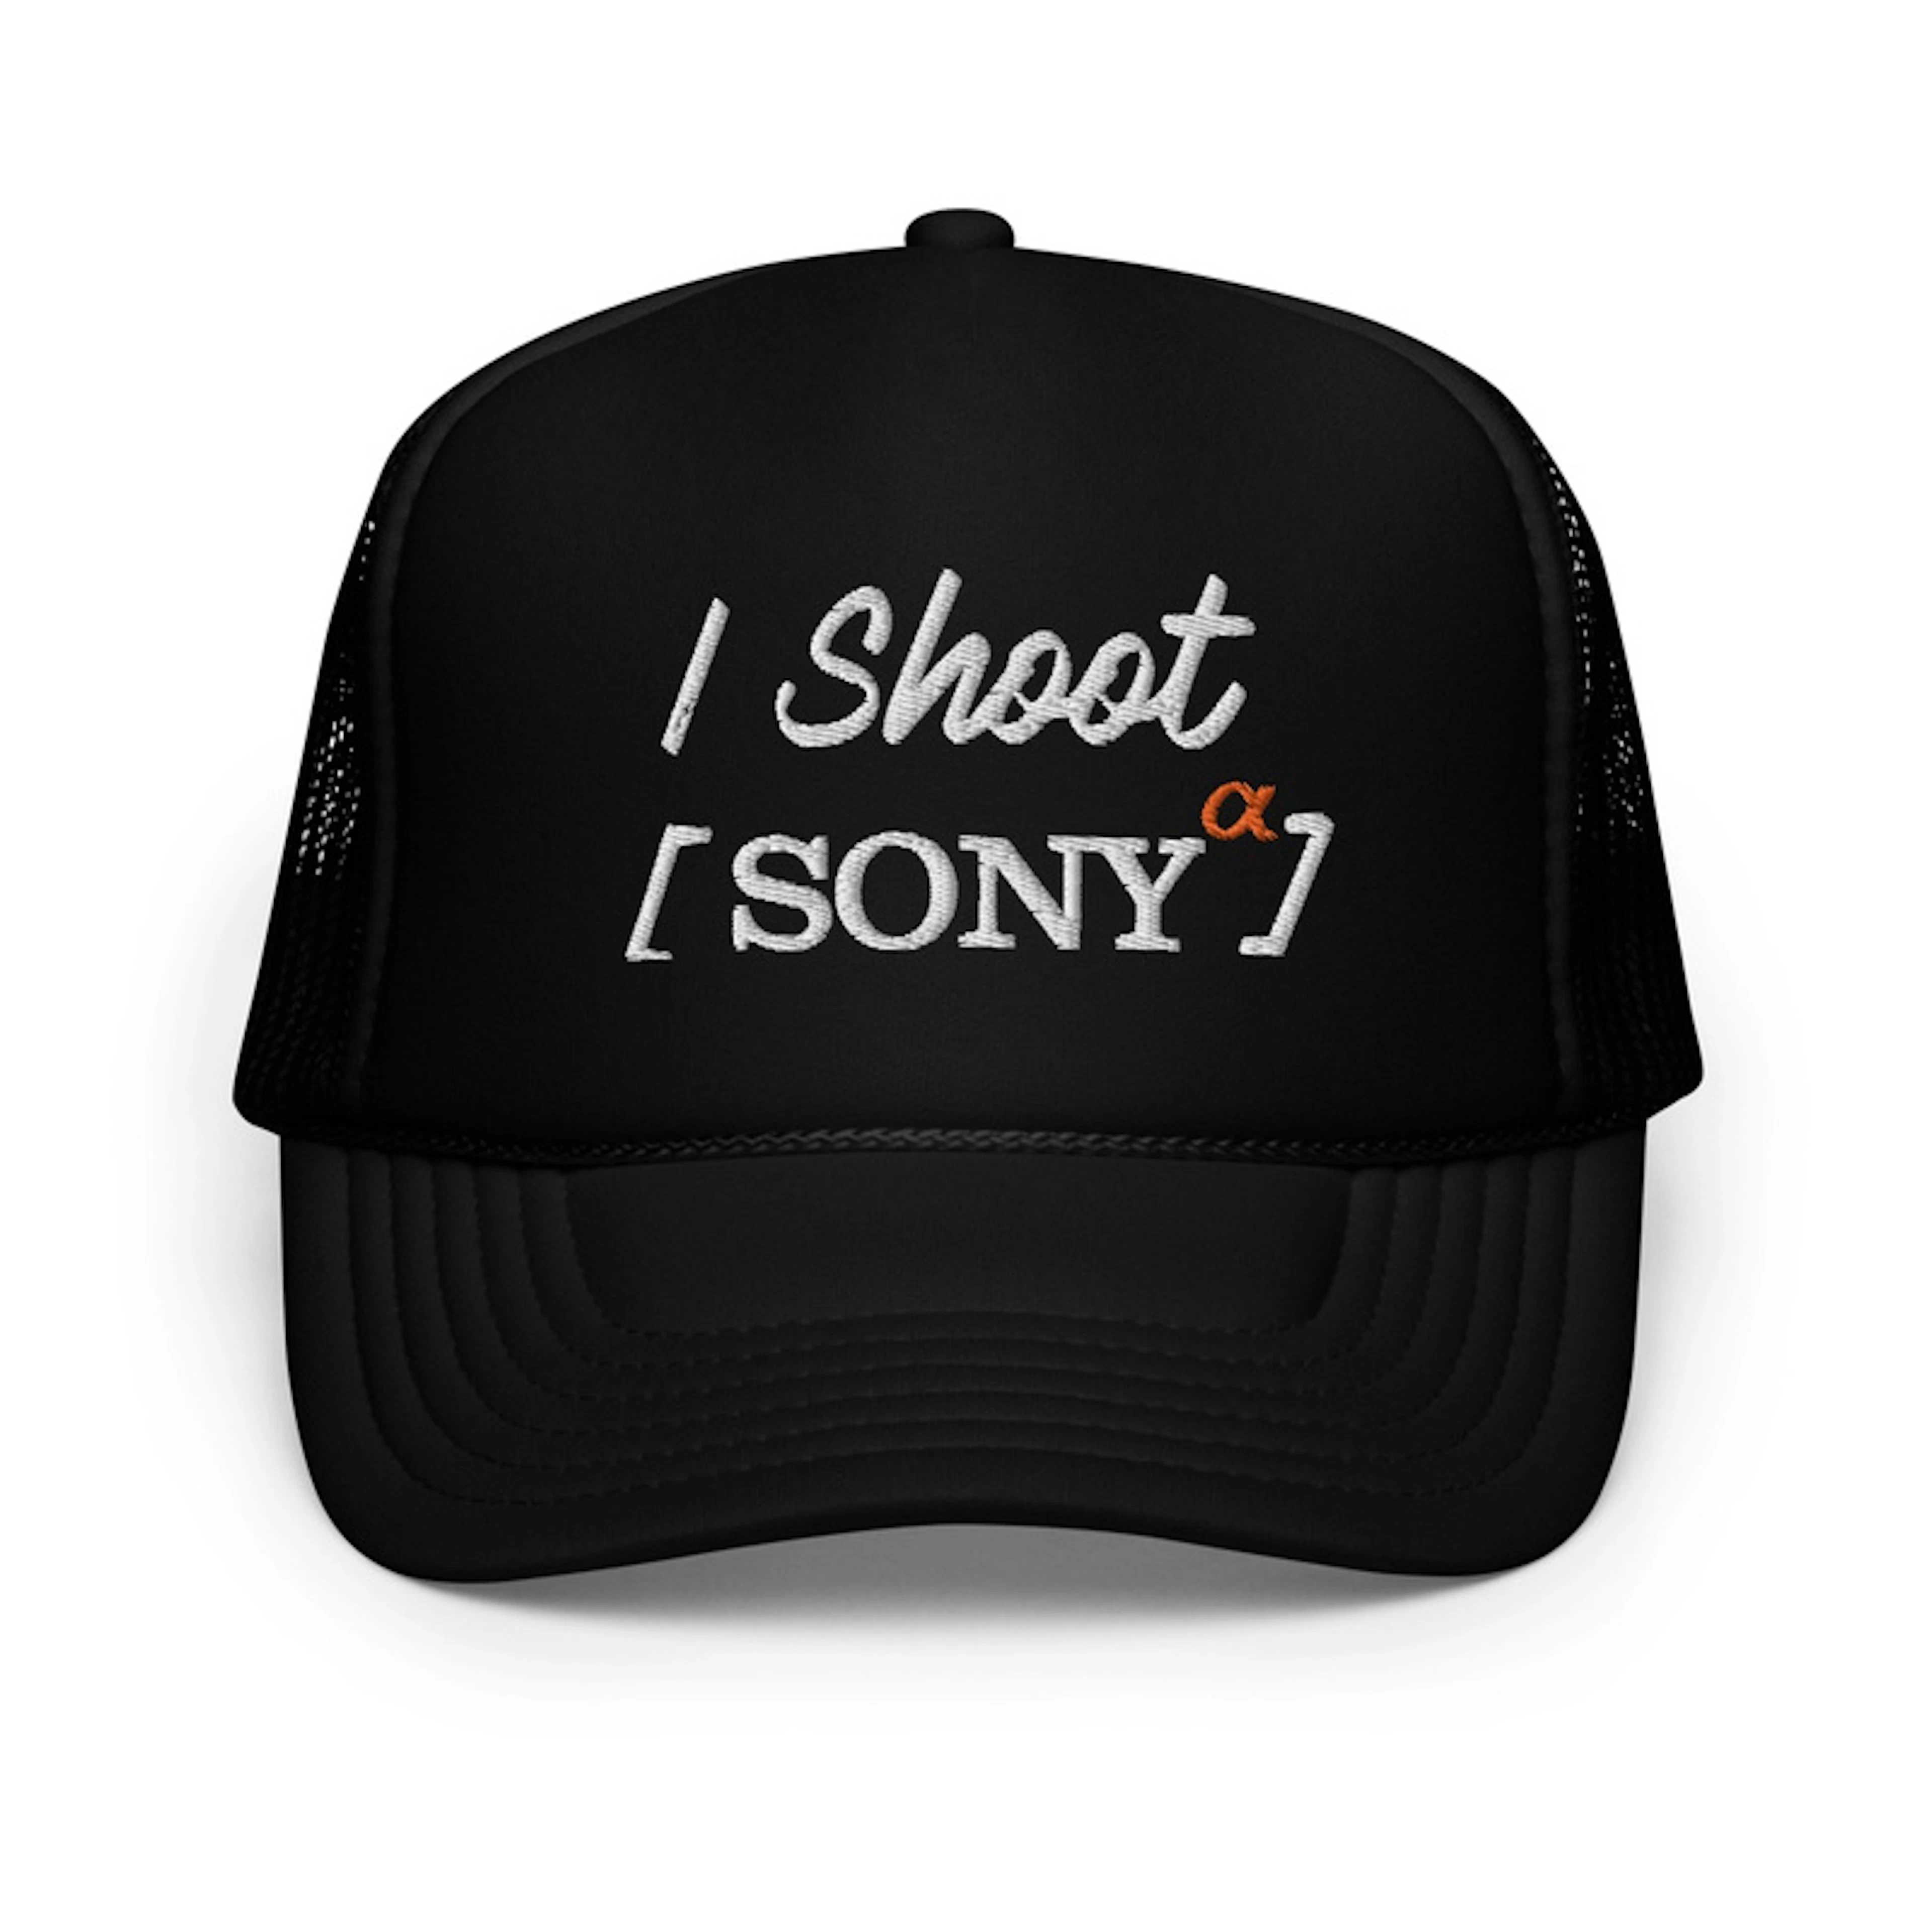 I Shoot Sony Foam Trucker Hat